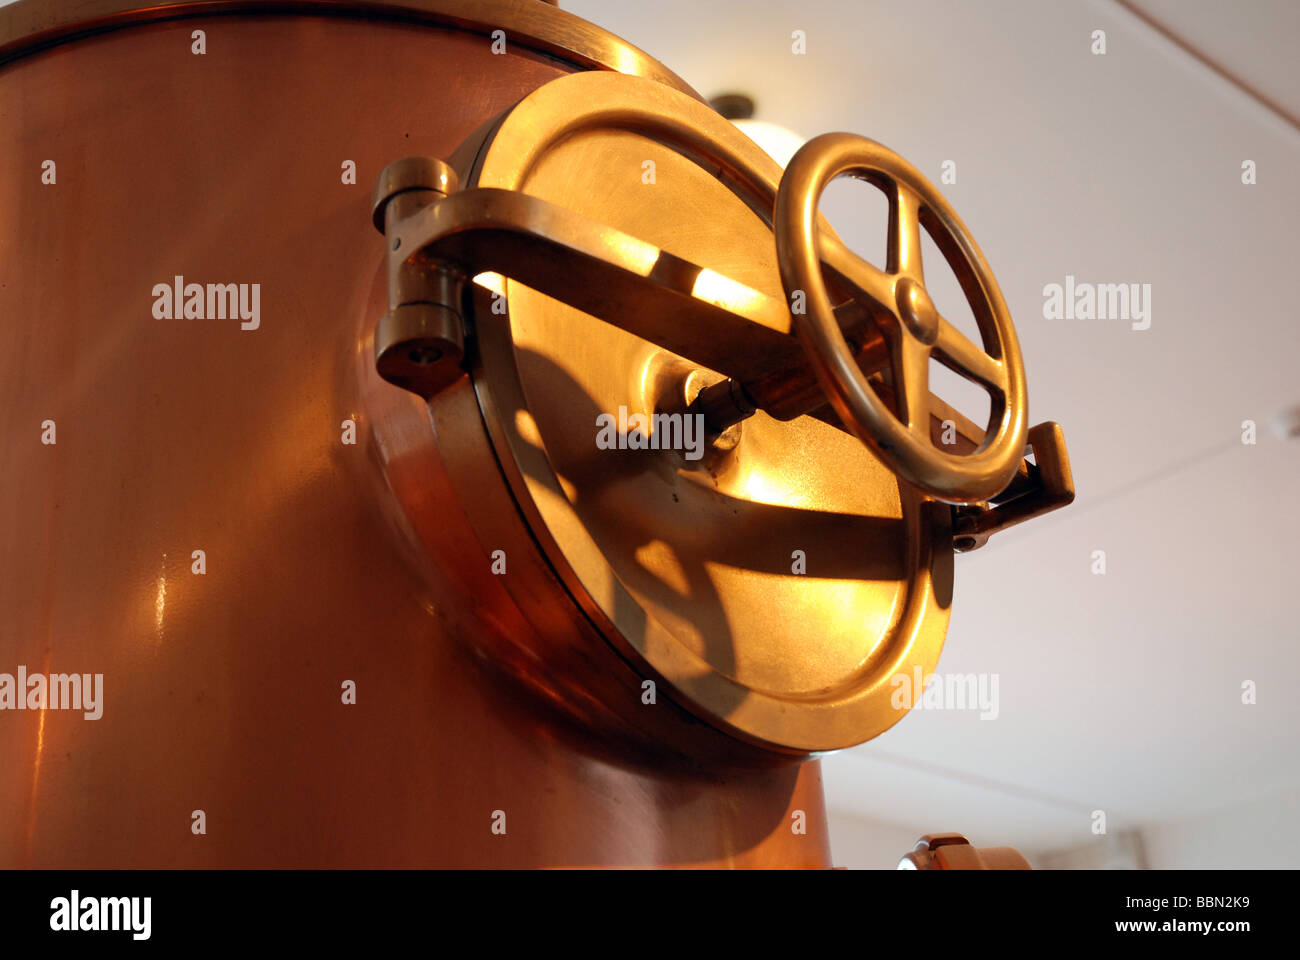 heineken experience amsterdam copper brass wheel valve brewing mash tun Stock Photo